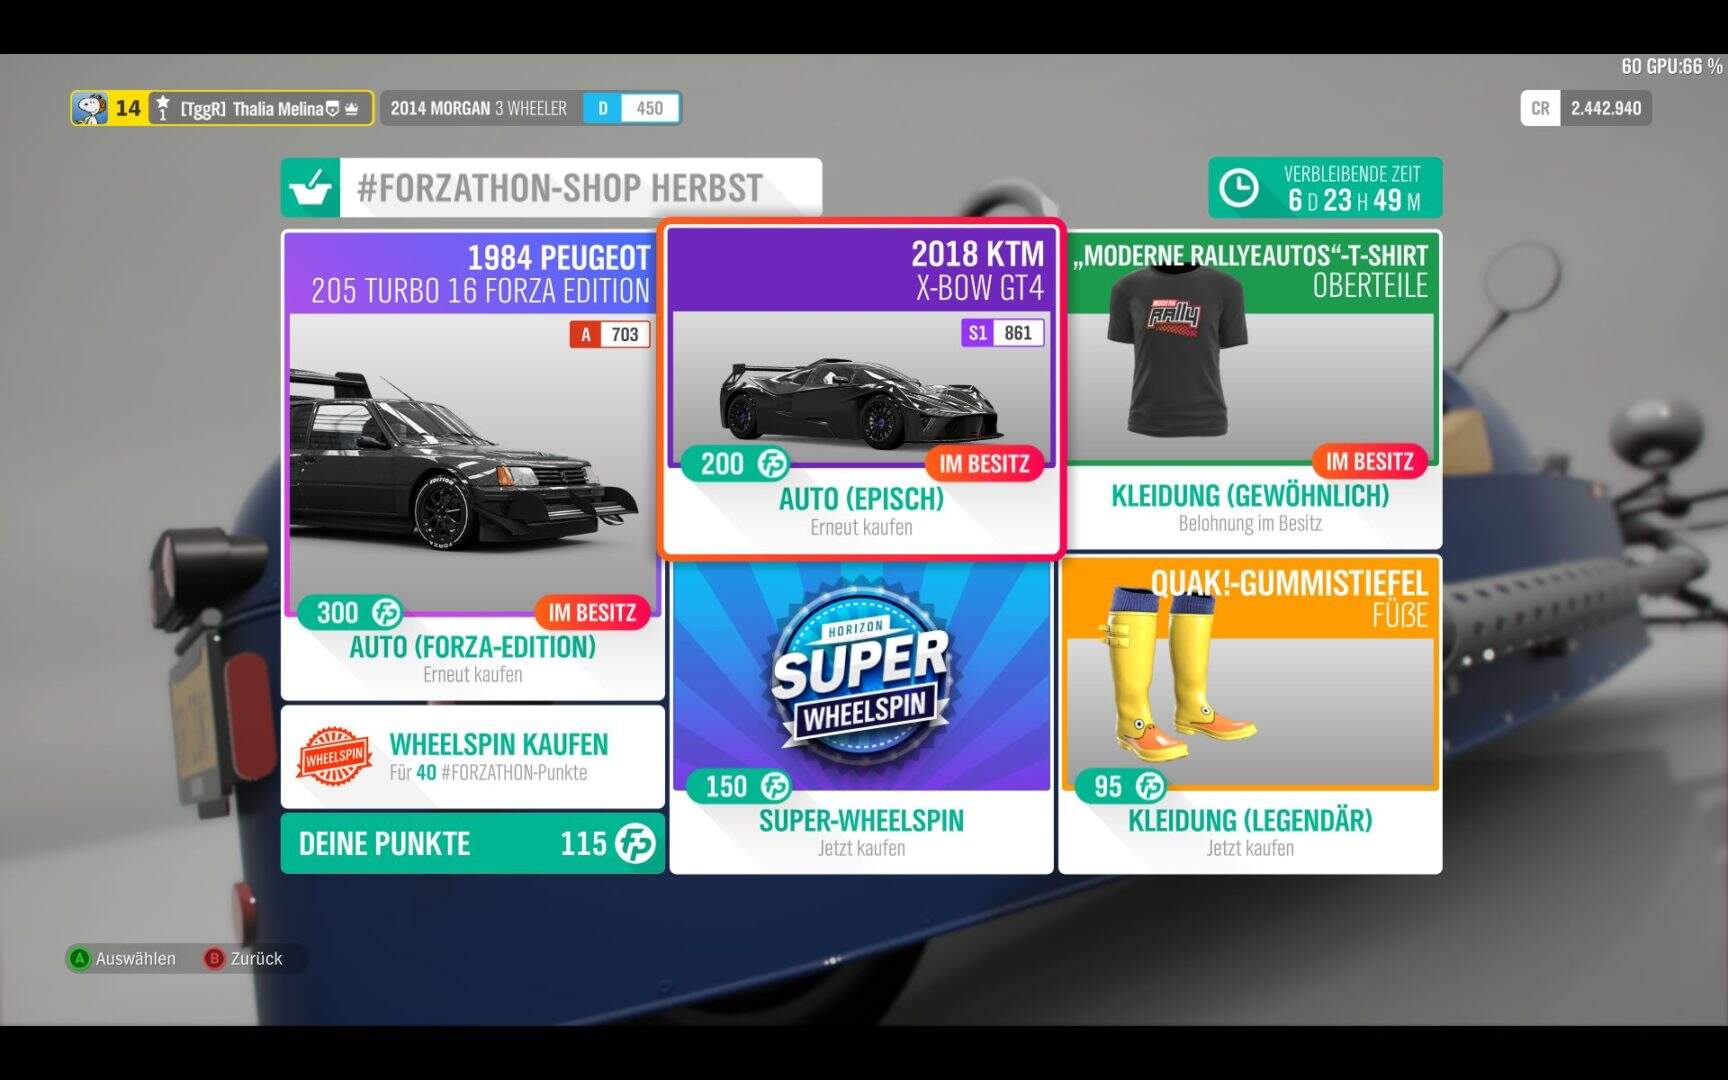 Forza Horizon 4 Forzathon Shop Herbst KW 48